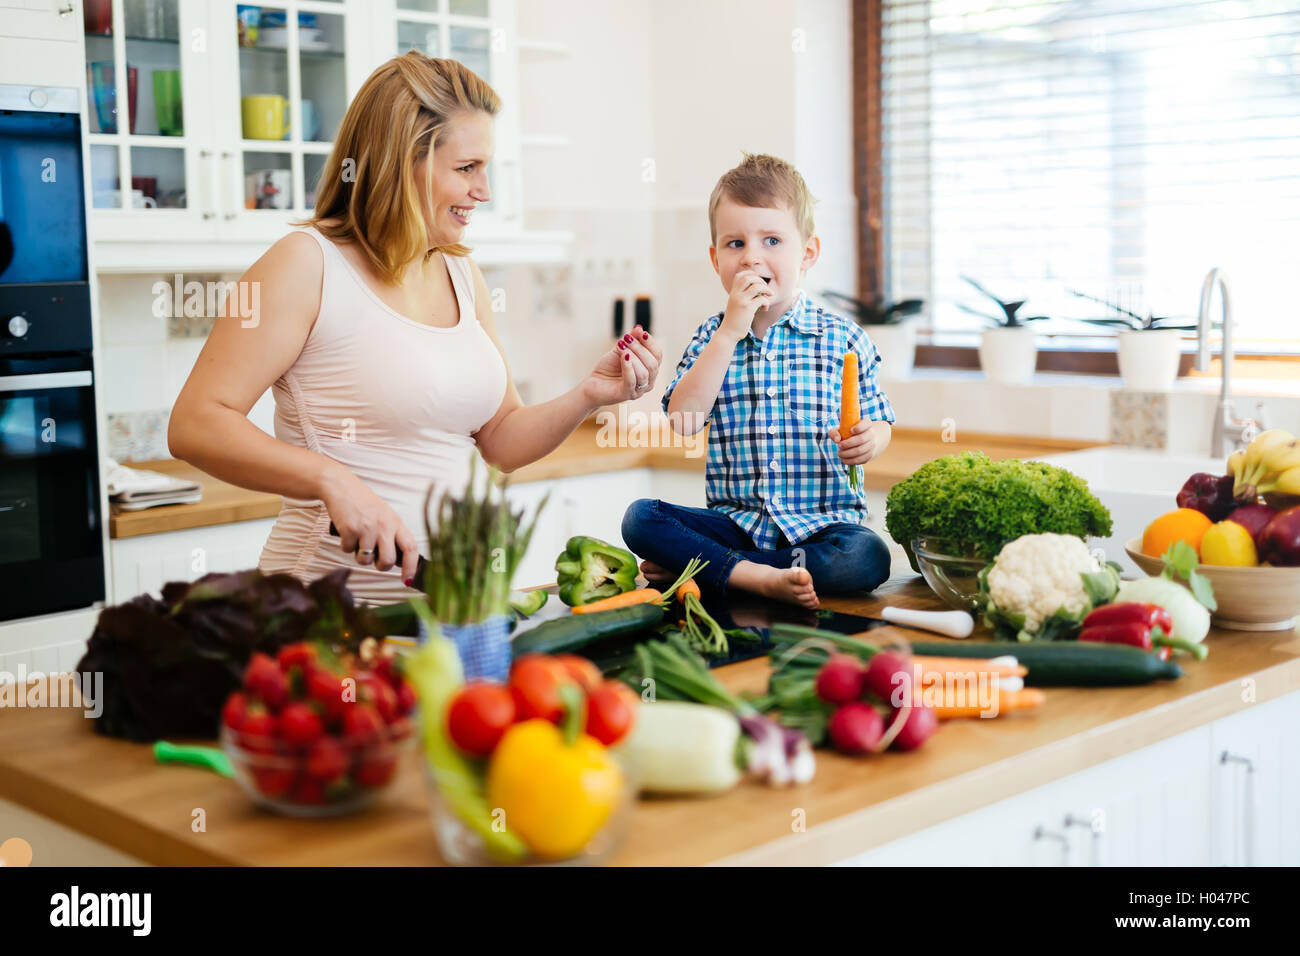 La madre e il bambino a preparare il pranzo da verdure fresche Foto Stock